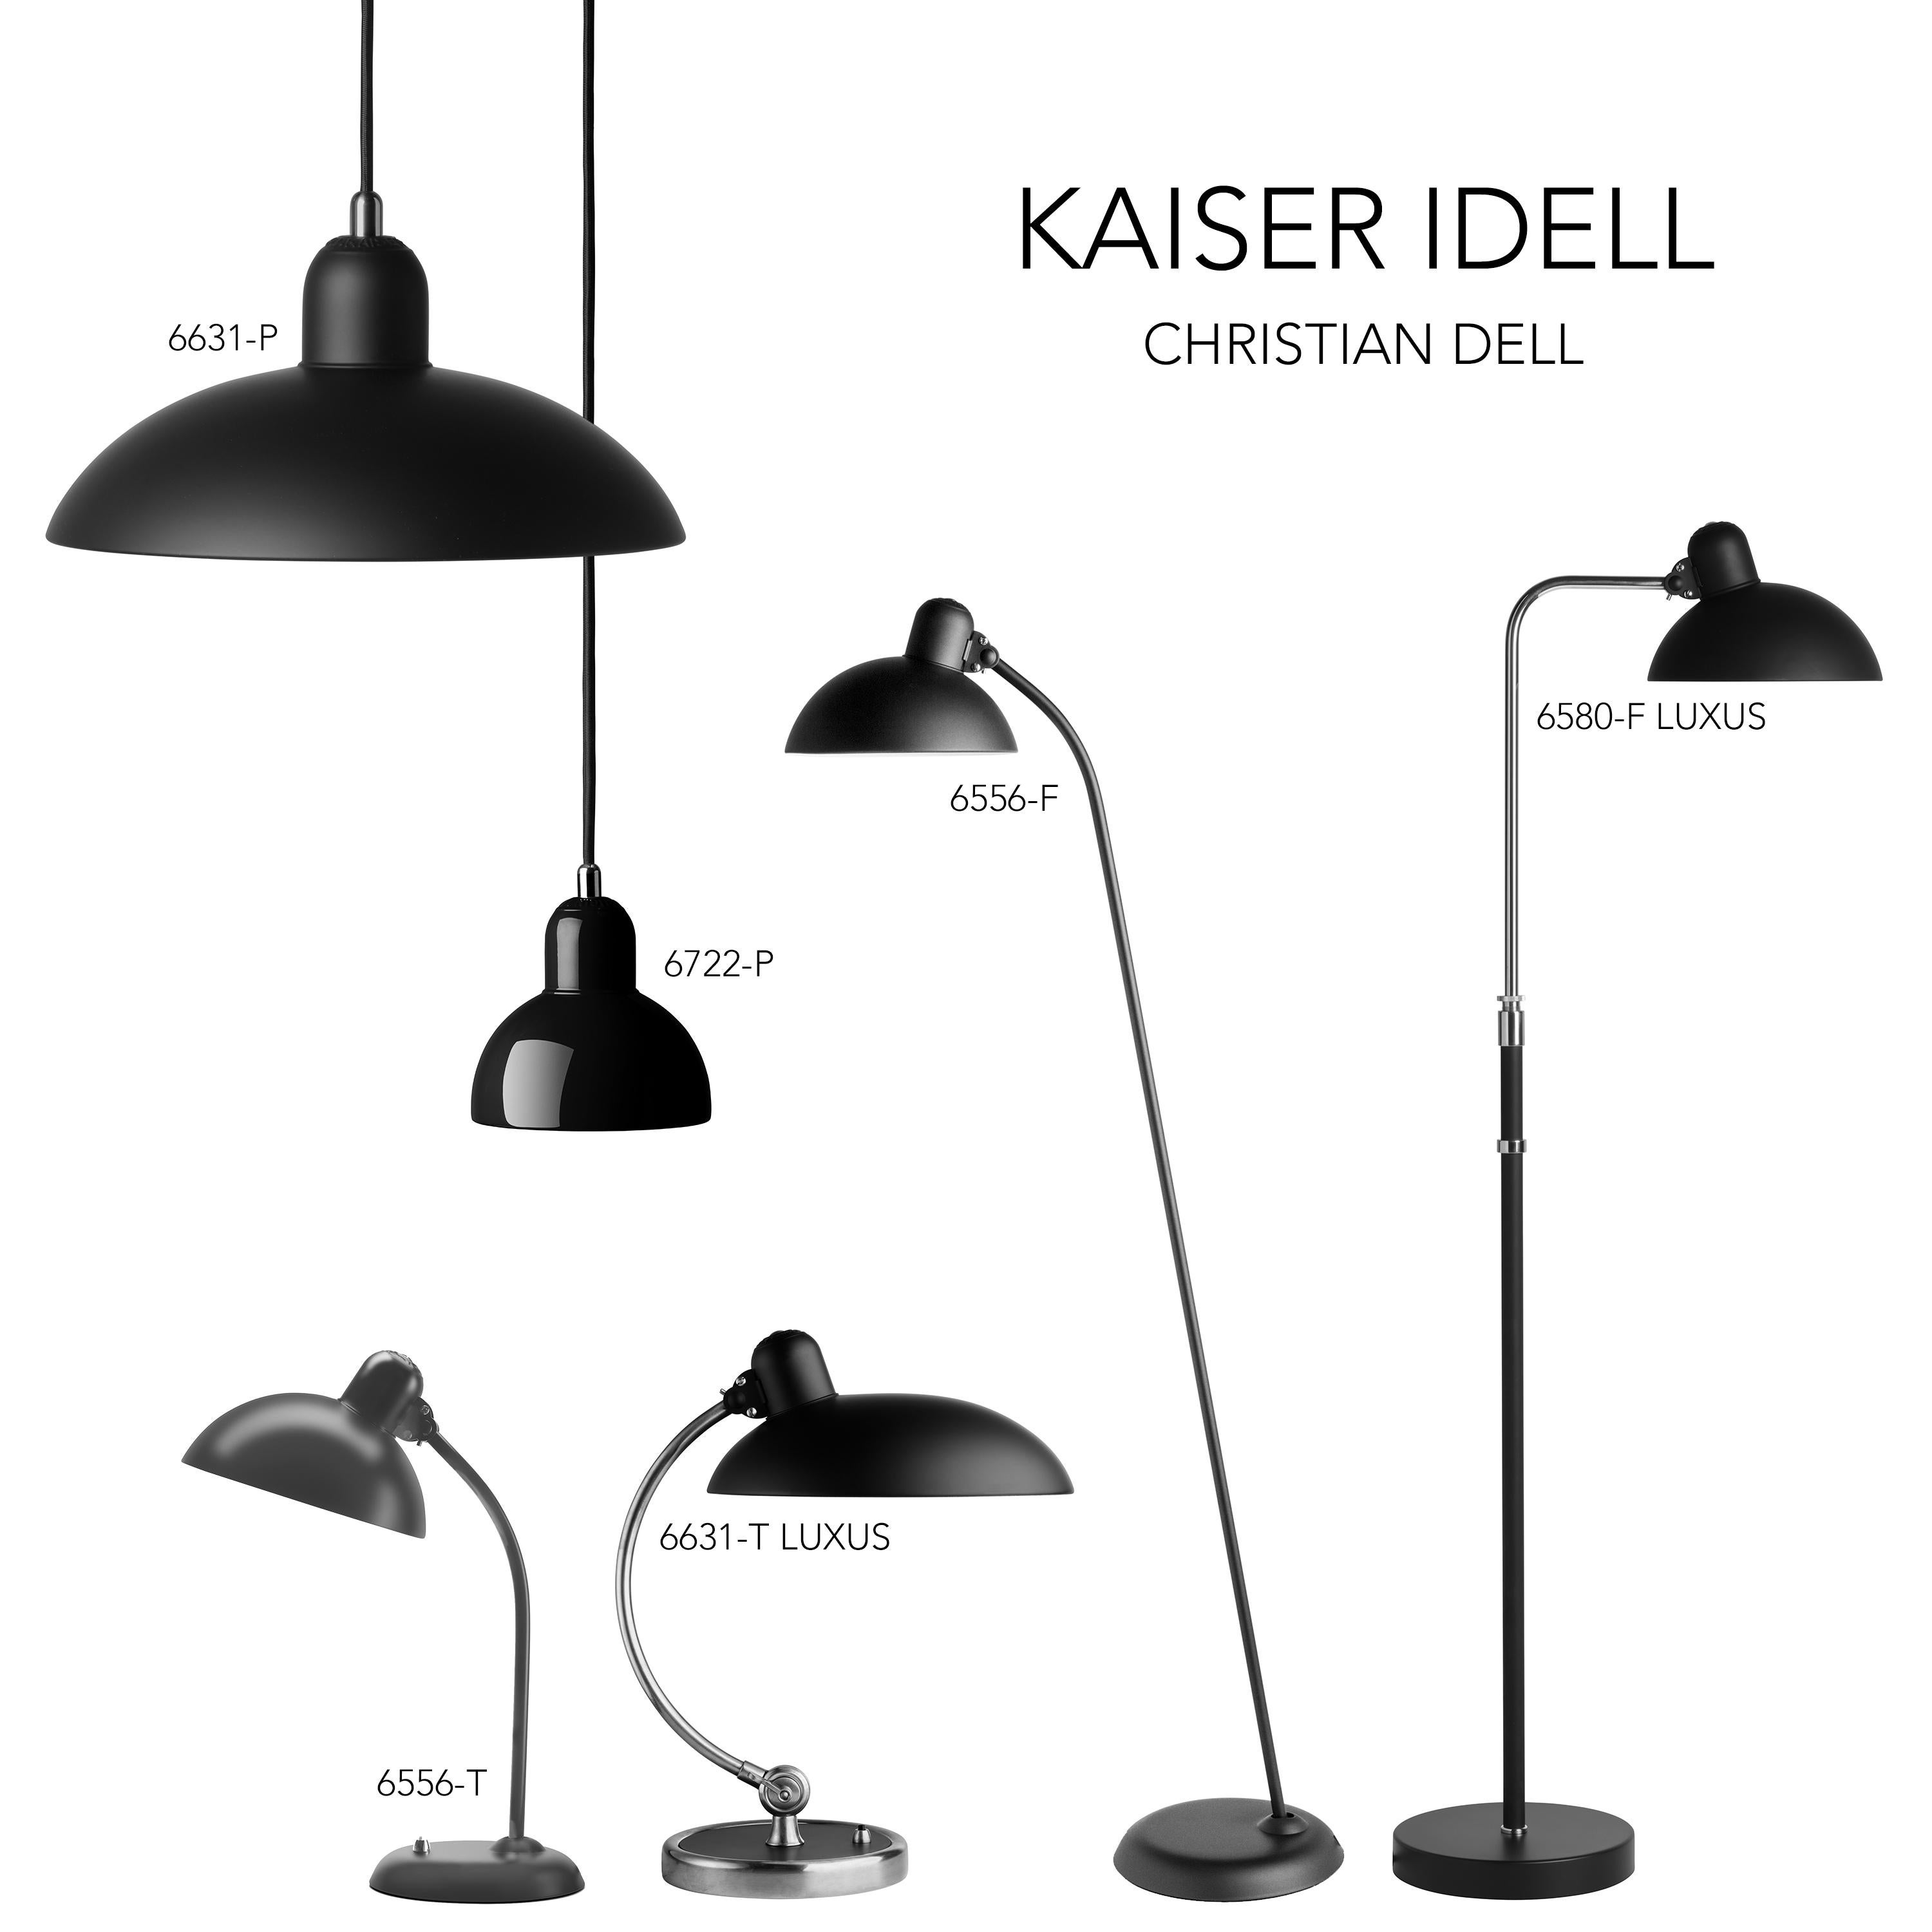 Christian Dell 'Kaiser Idell 6631-P' Pendant for Fritz Hansen in Gloss White For Sale 7